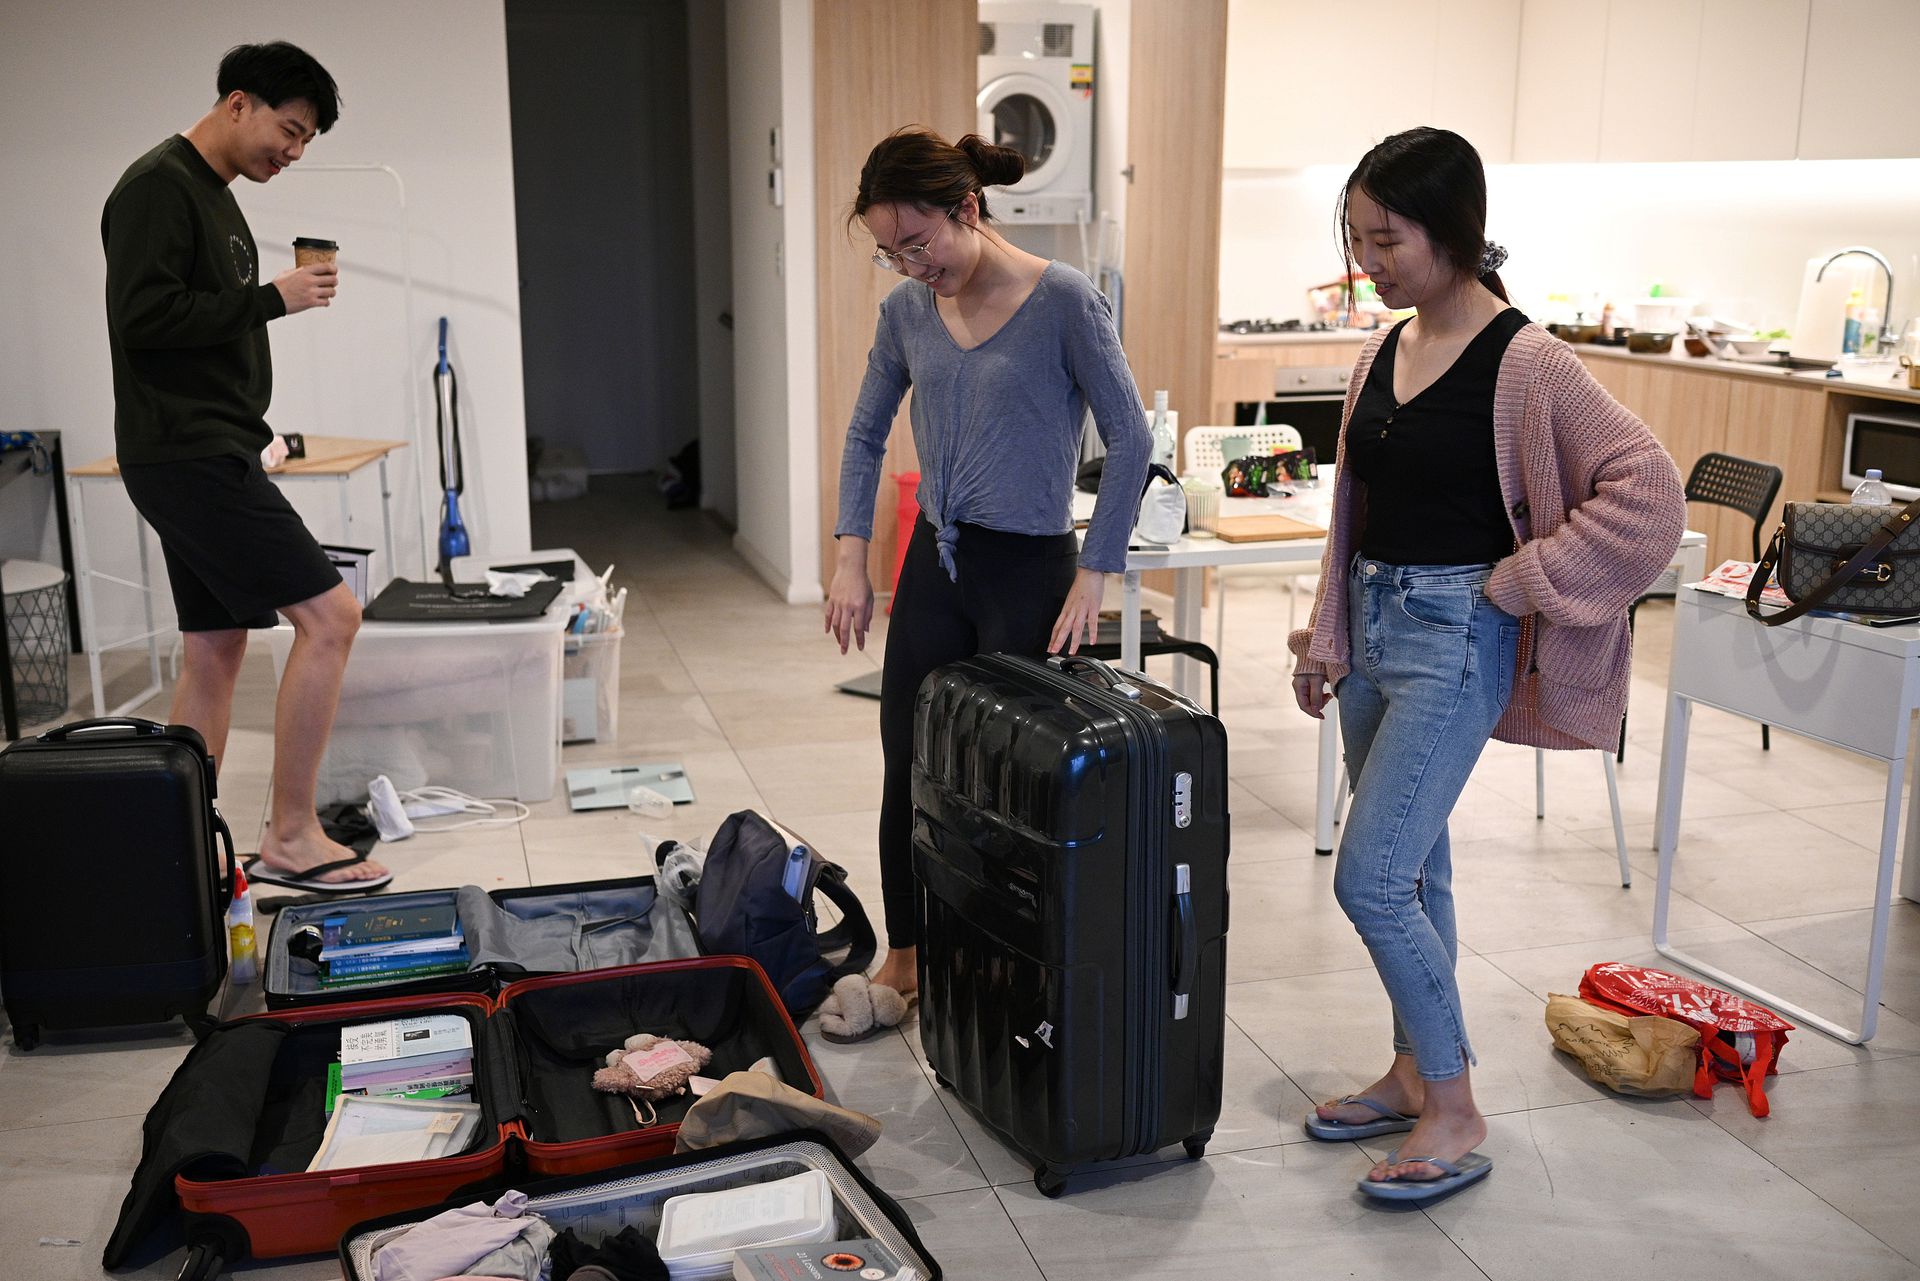 中国留学生Sunny Gu（左）和女友Maggie Zhang（右）与室友Siyan Zhu交流。Siyan Zhu也来自中国，正在打包行李准备返回中国。（人民视觉）